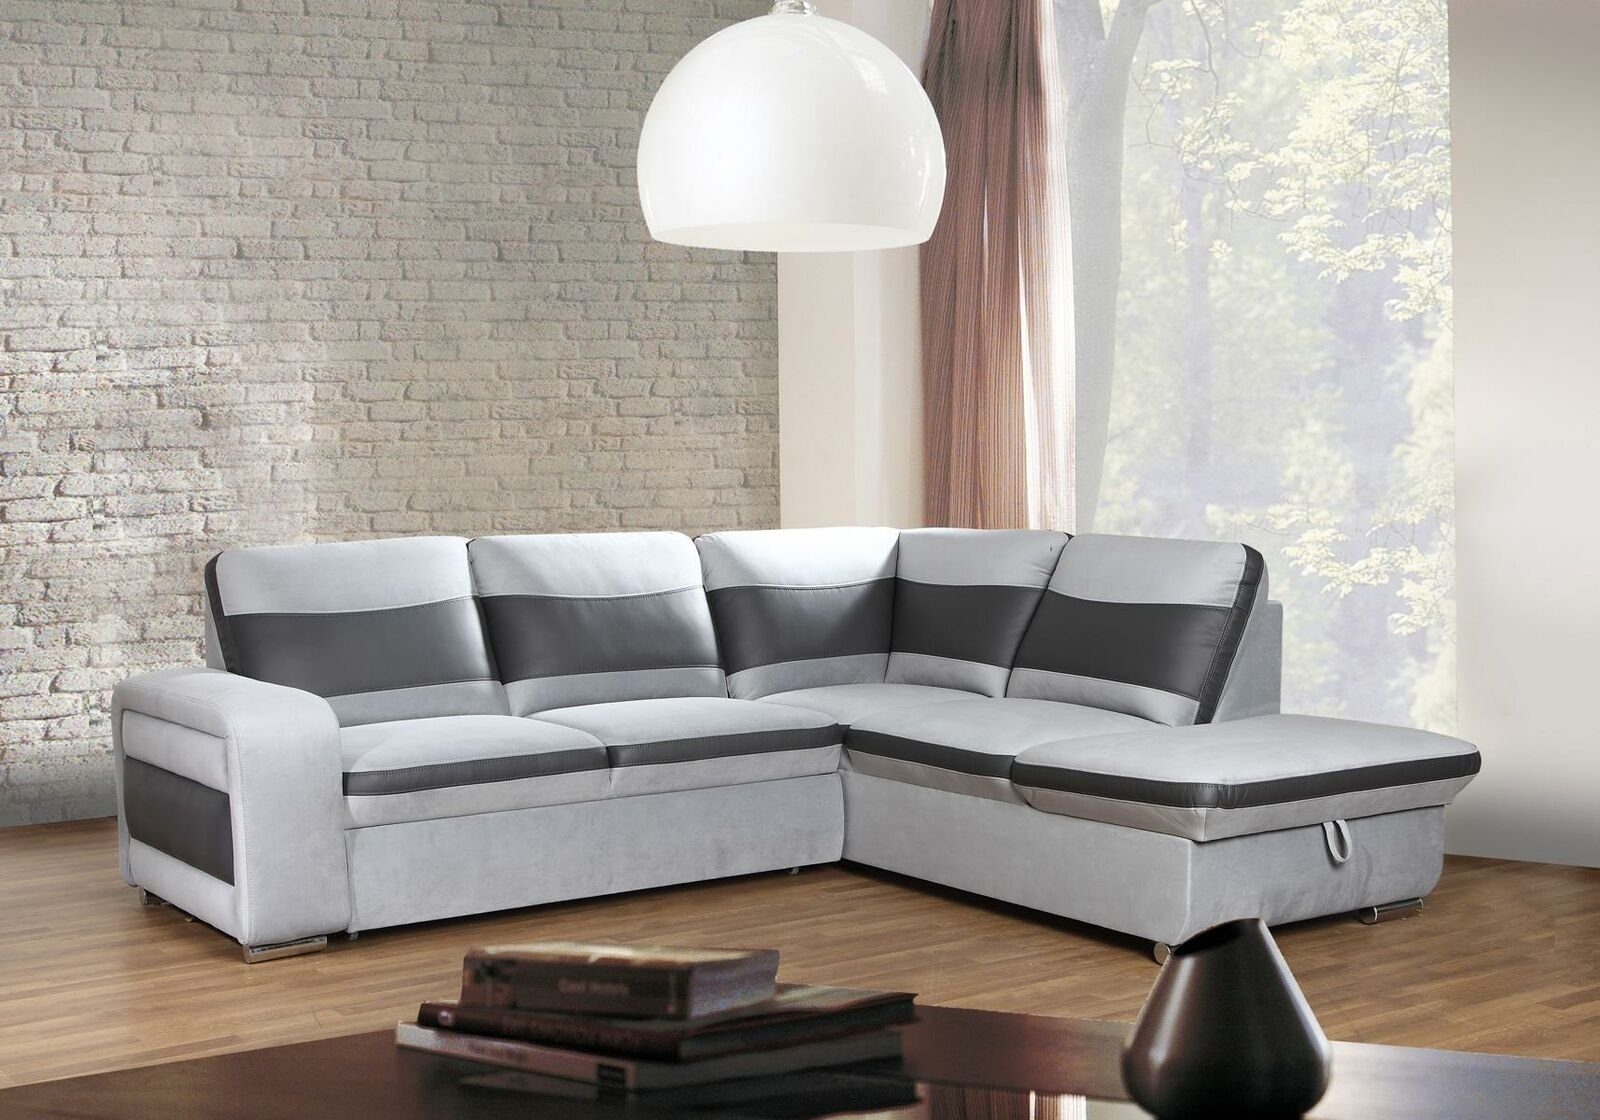 JVmoebel Sofa Luxus Weißes Made Polstermöbel Ecksofa Neu, in modernes Europe Couch